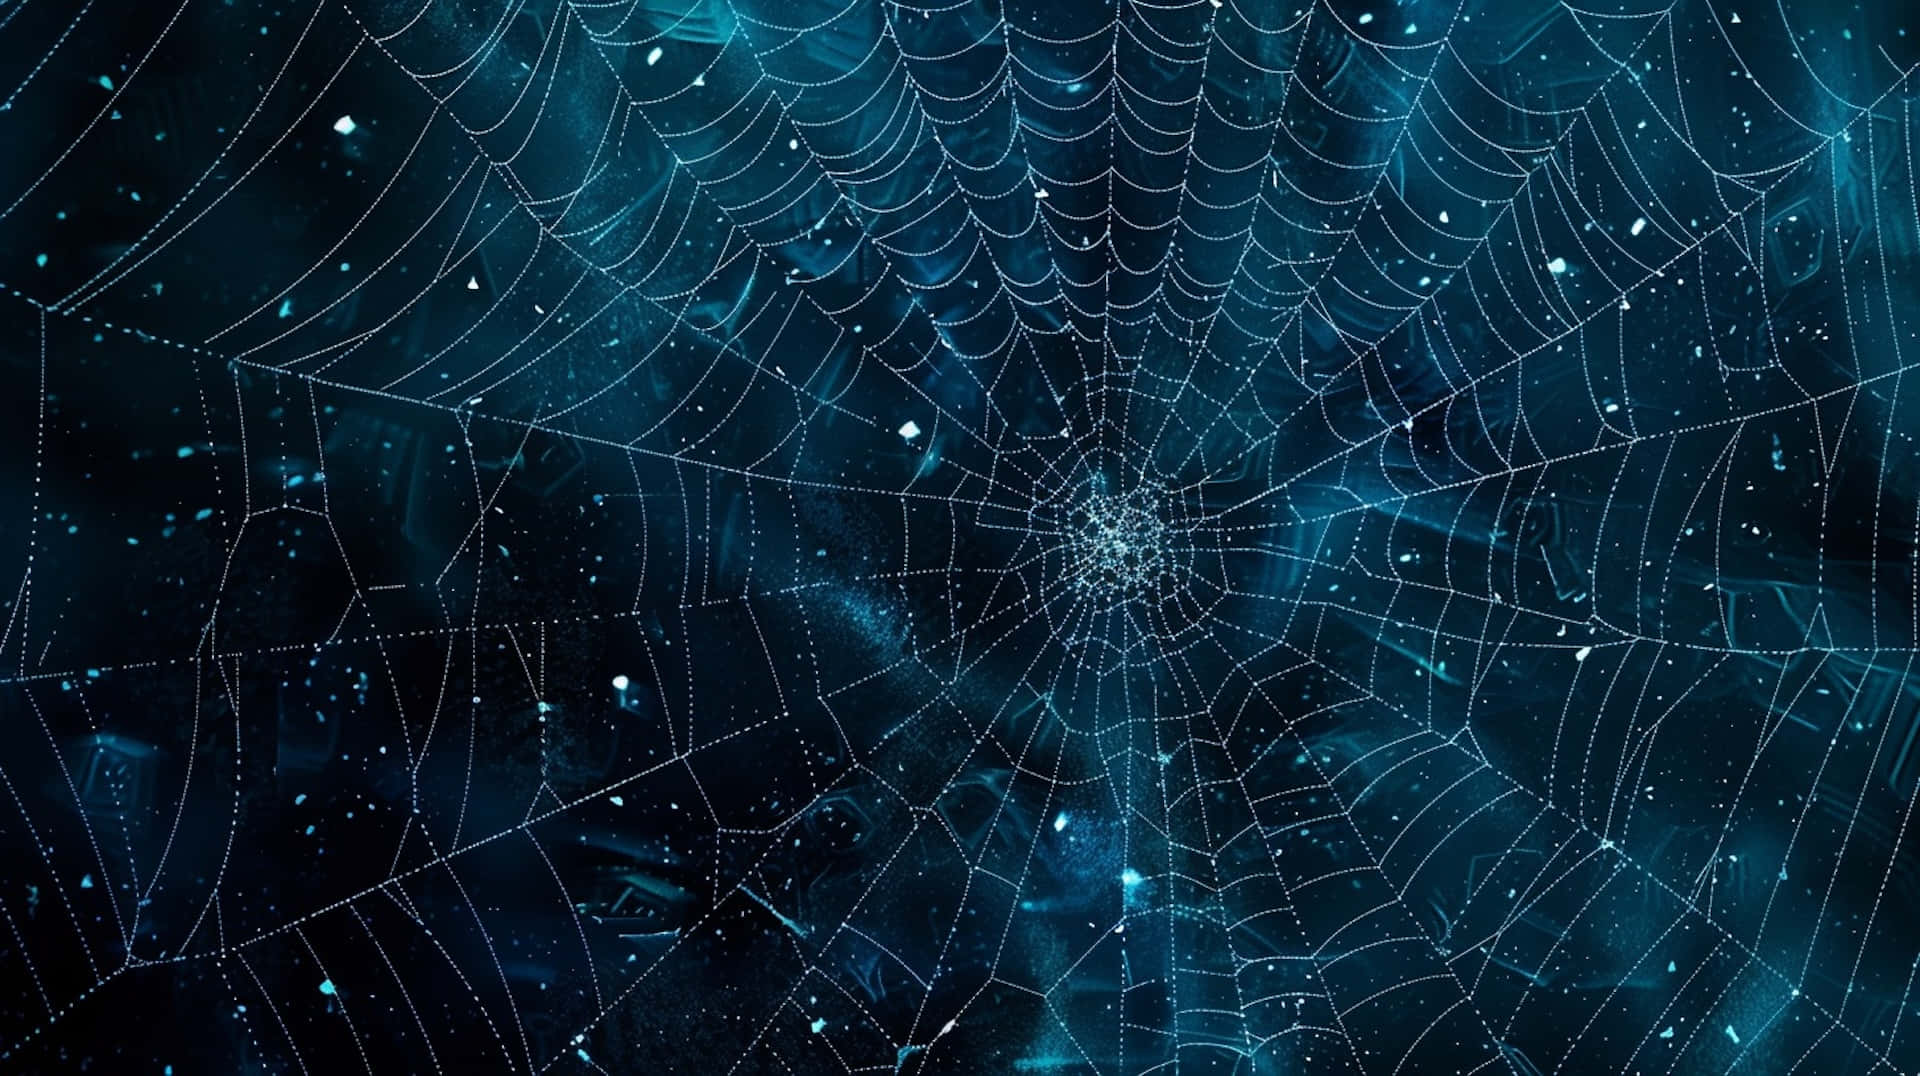 Glistening Spider Web Night Sky Wallpaper